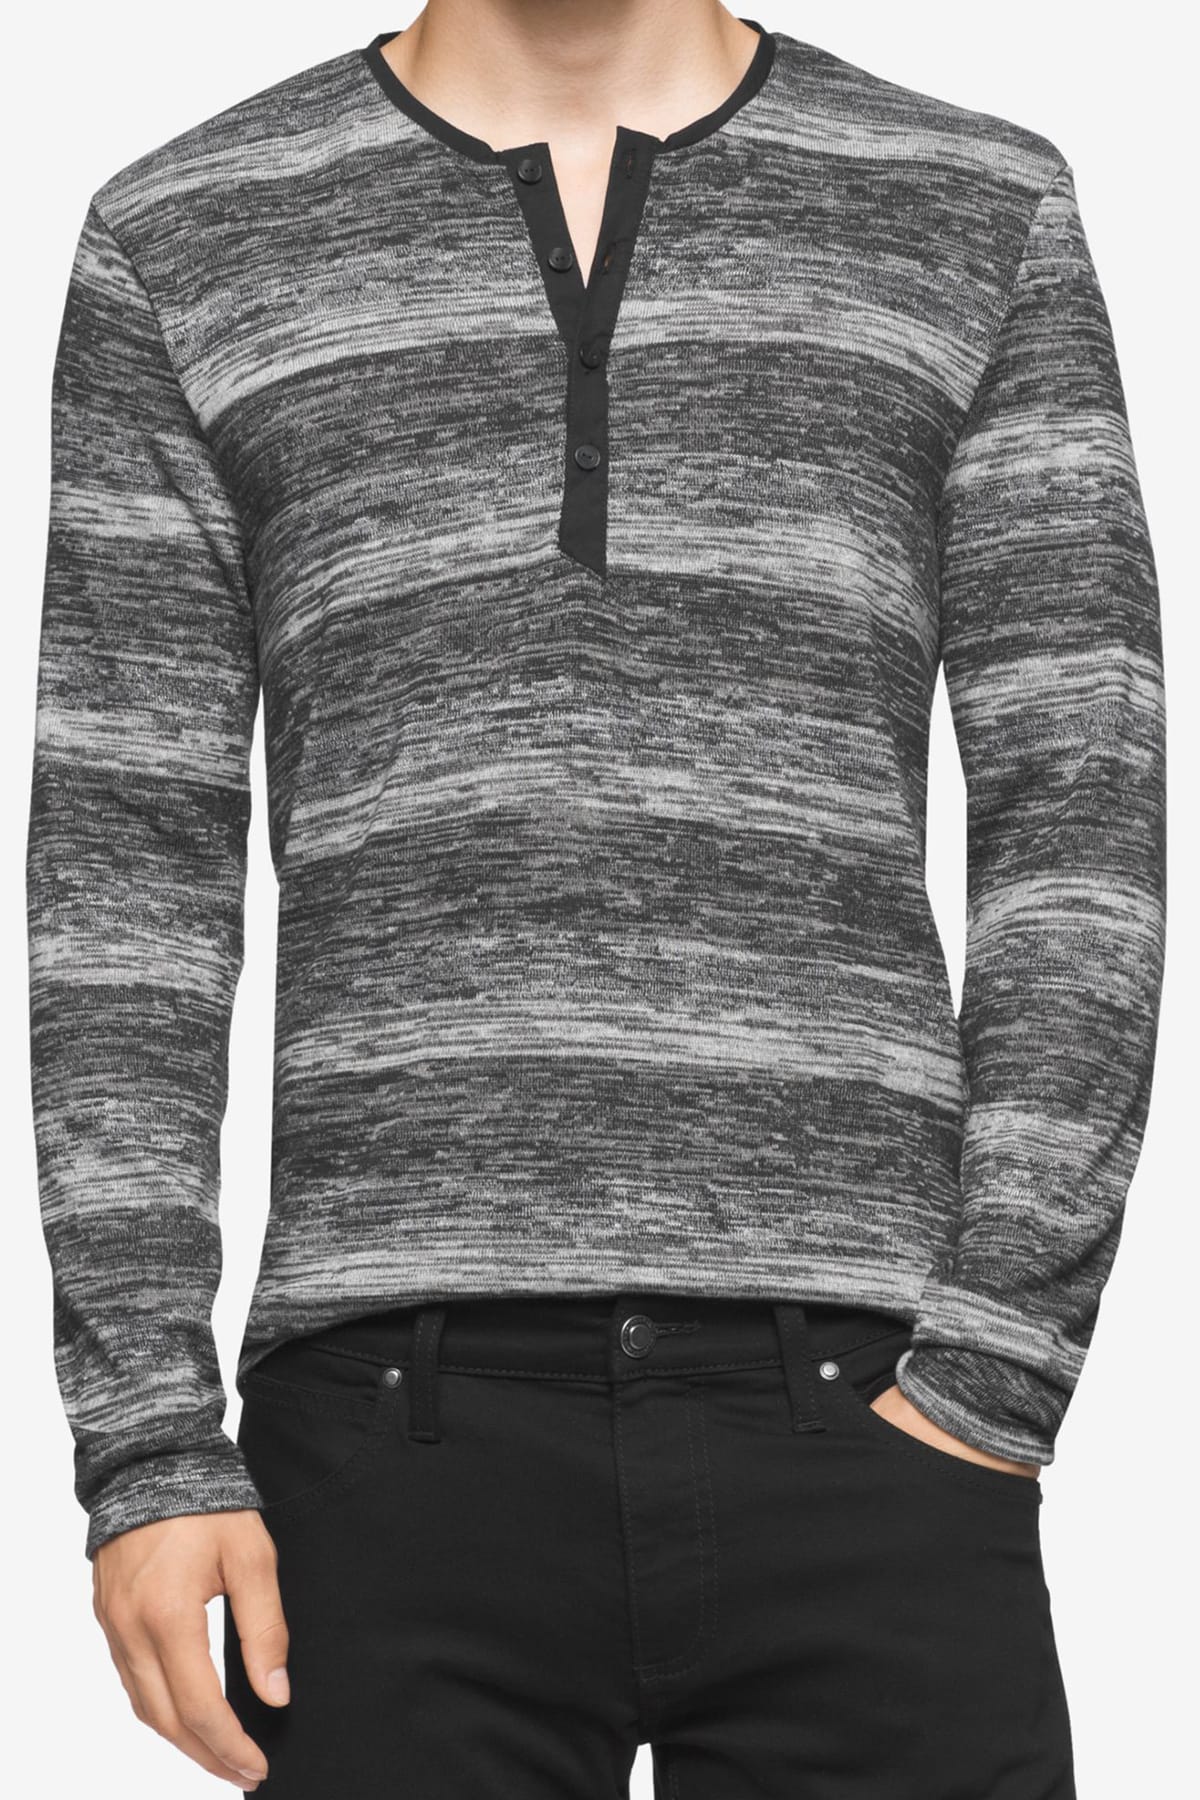 Calvin Klein Black Marled Stripe Henley Sweater